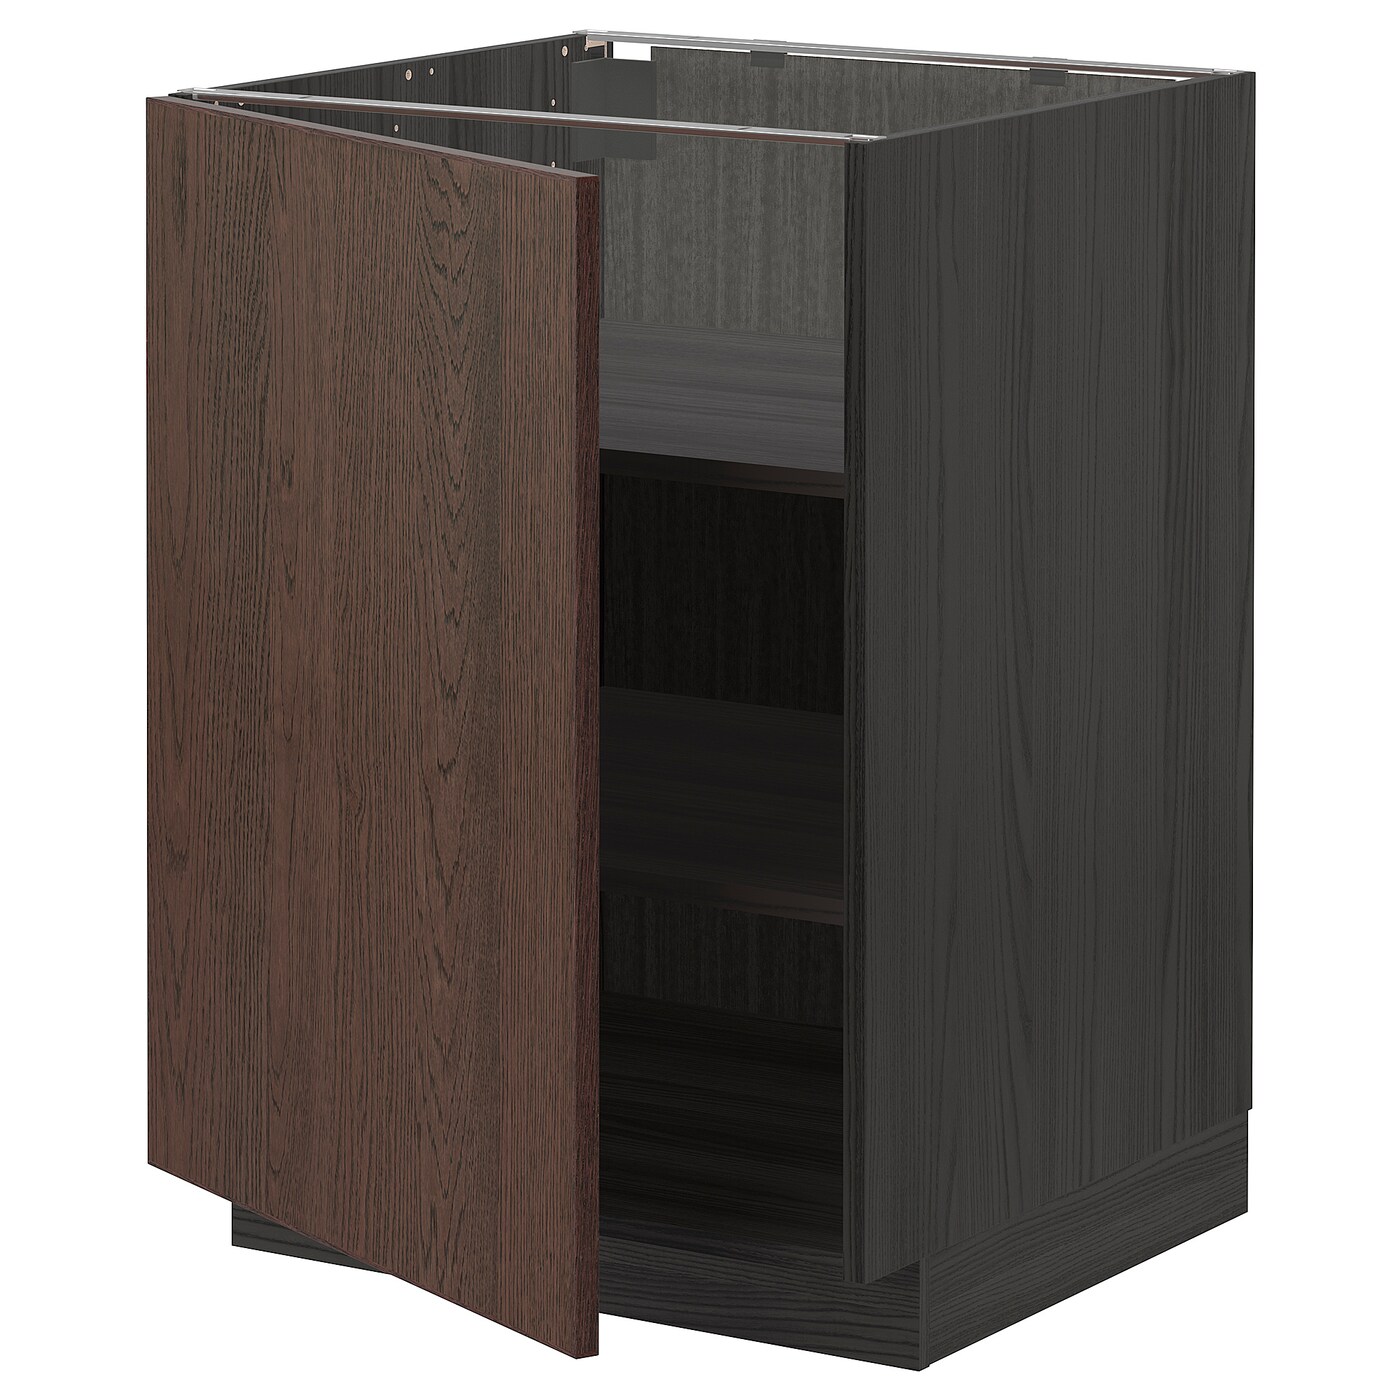 Напольный кухонный шкаф  - IKEA METOD MAXIMERA, 88x62x60см, черный/темно-коричневый, МЕТОД МАКСИМЕРА ИКЕА